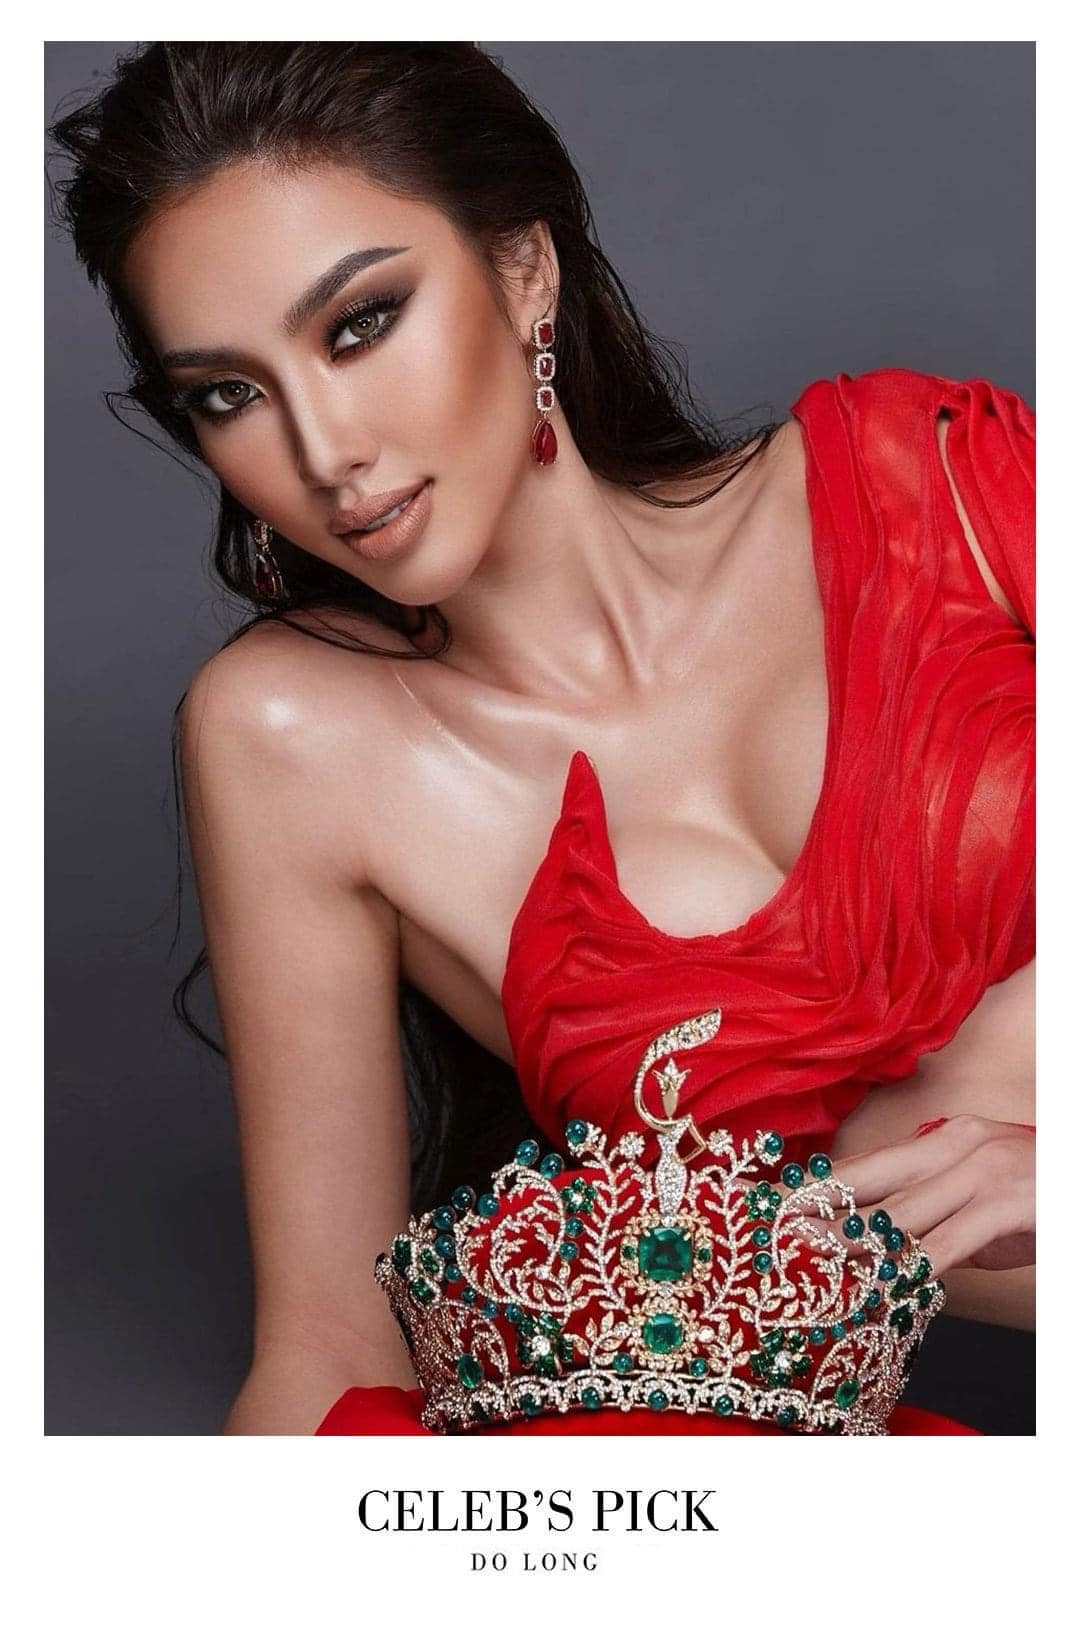 Hoa hậu Thùy Tiên quyến rũ trong thiết kế cắt xẻ gợi cảm - Ảnh 2.